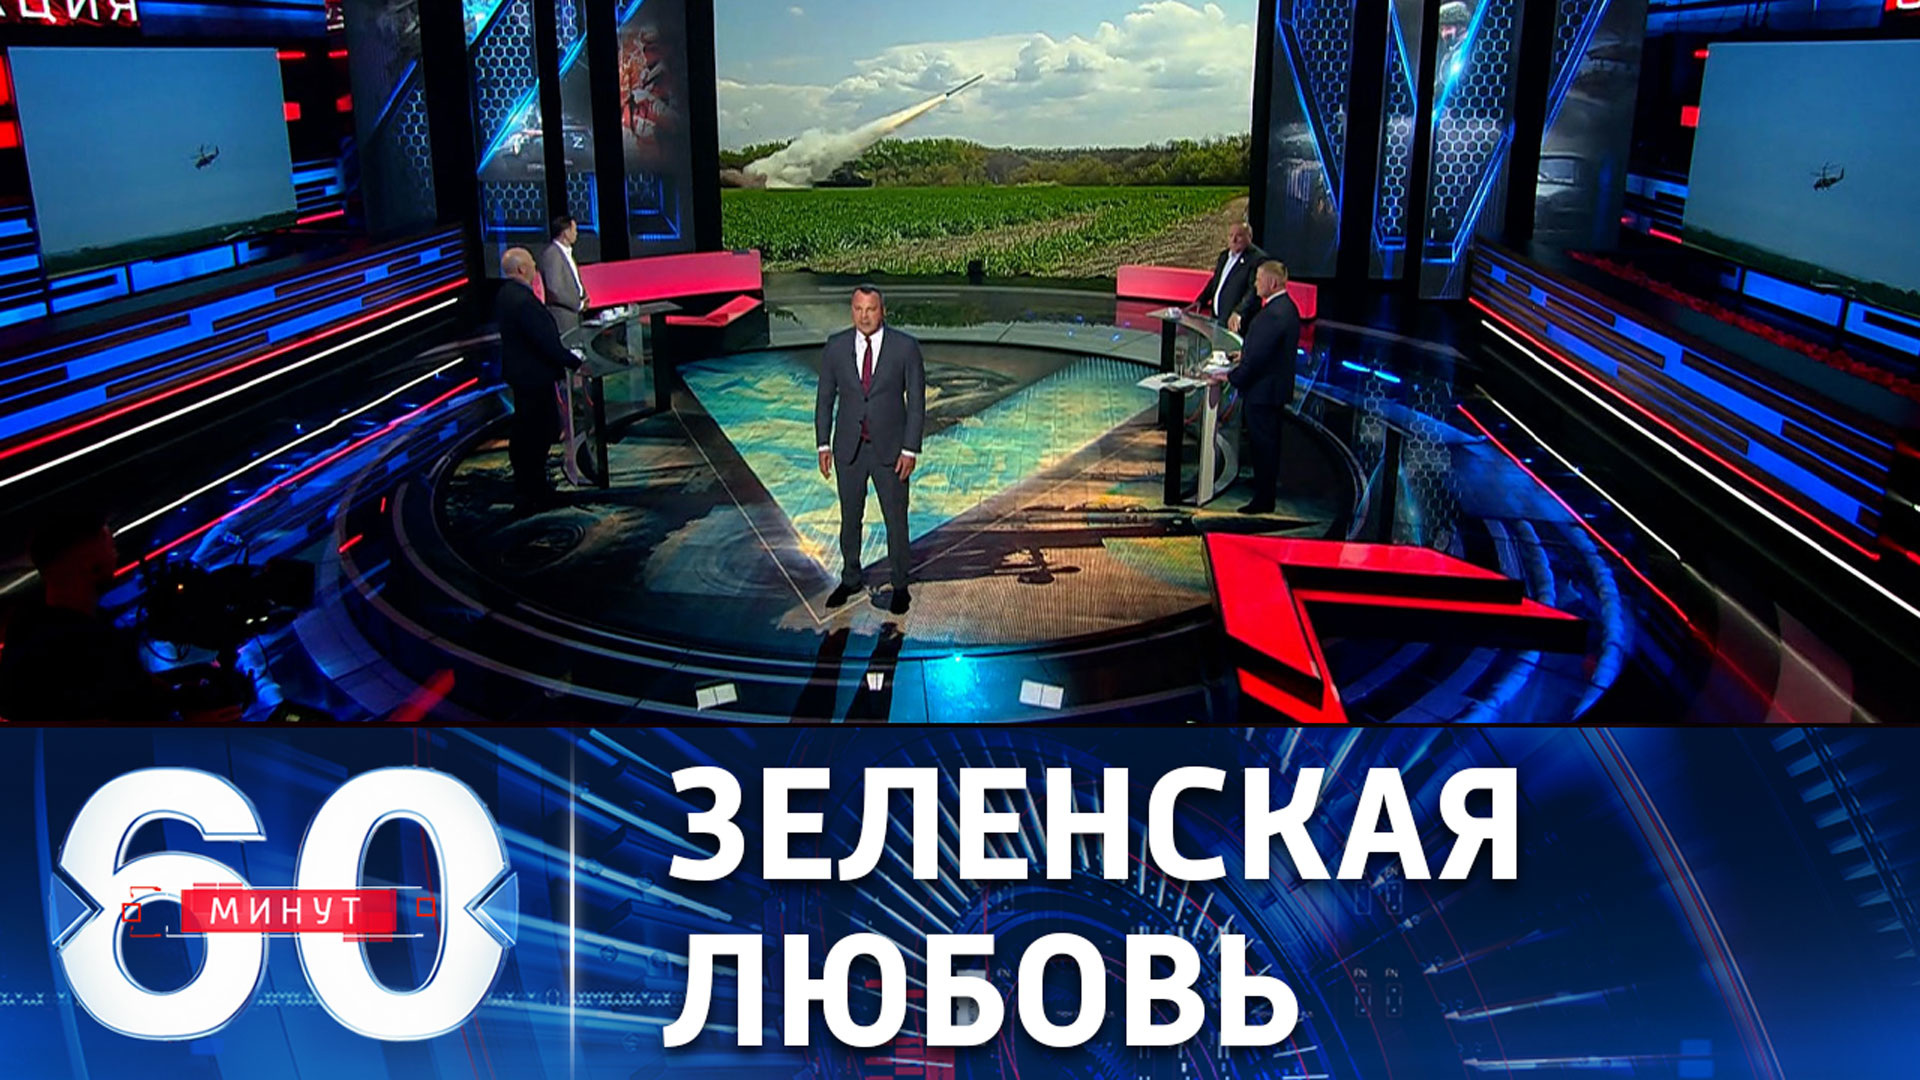 Канал россия 1 передачу 60 минут